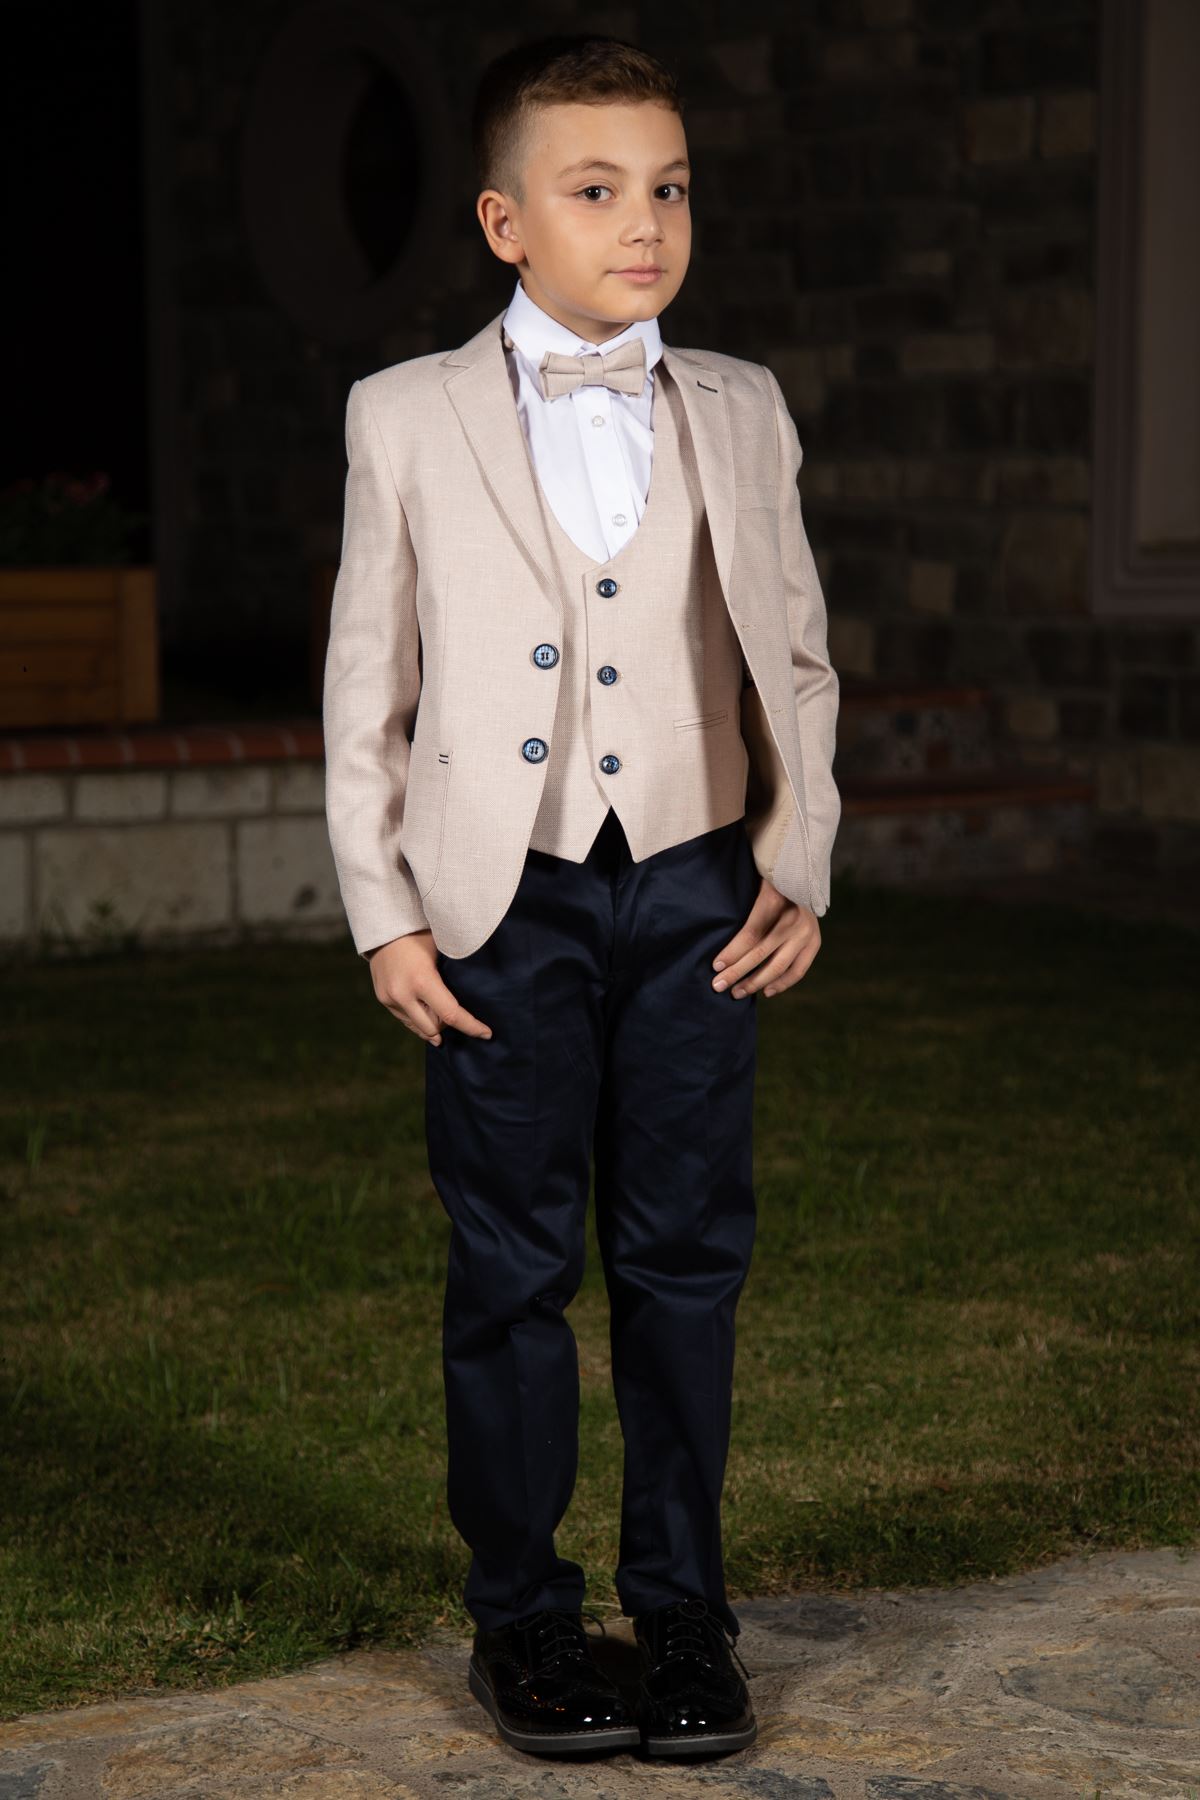 Borsa tascabile, modello flecked, Mono collare, set completo Boy Suit 153 Beige